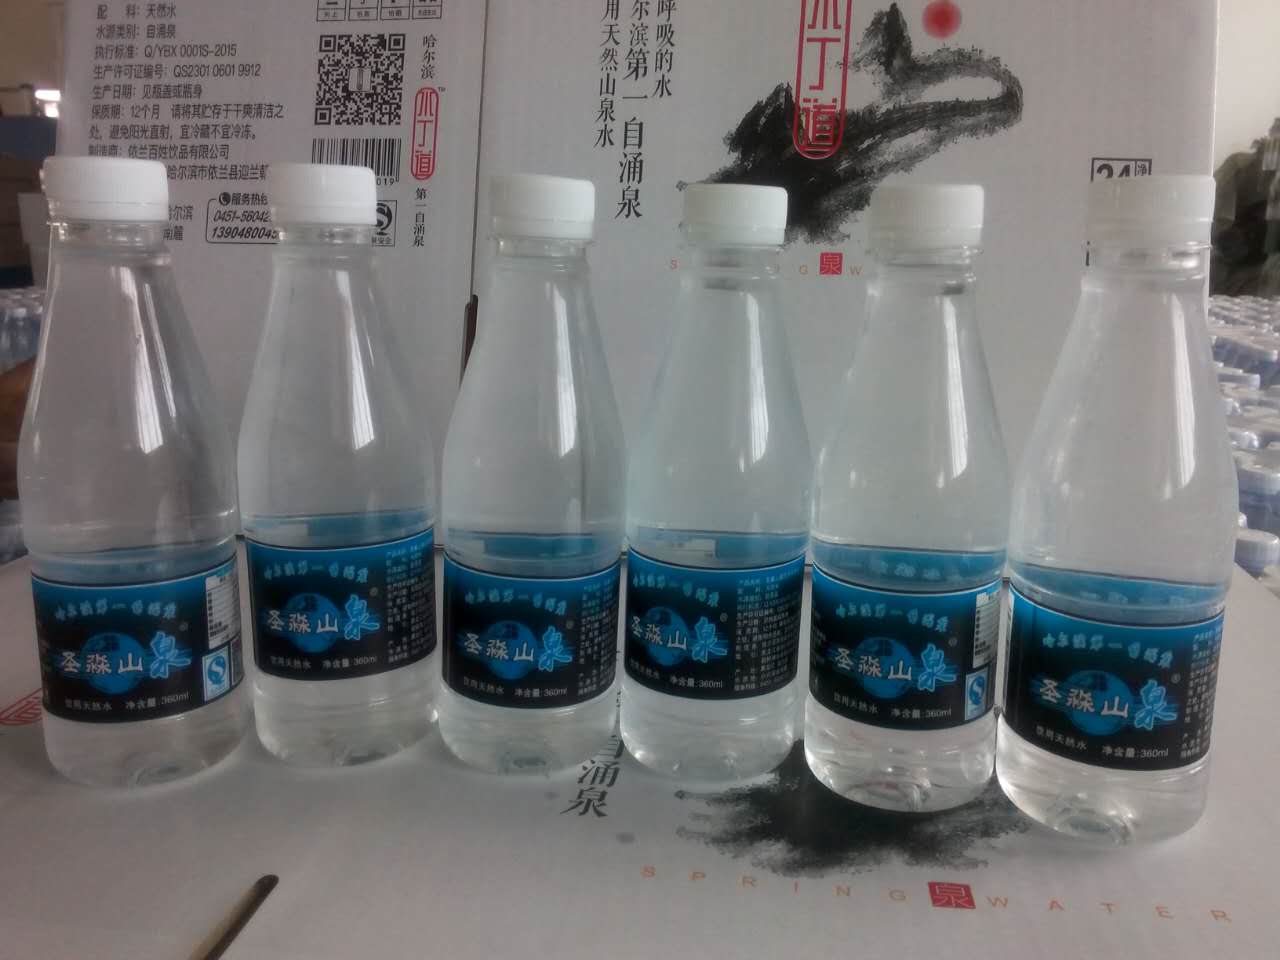 依兰瓶装水**自然泉水矿 专业批发零售纯净水 特价促销